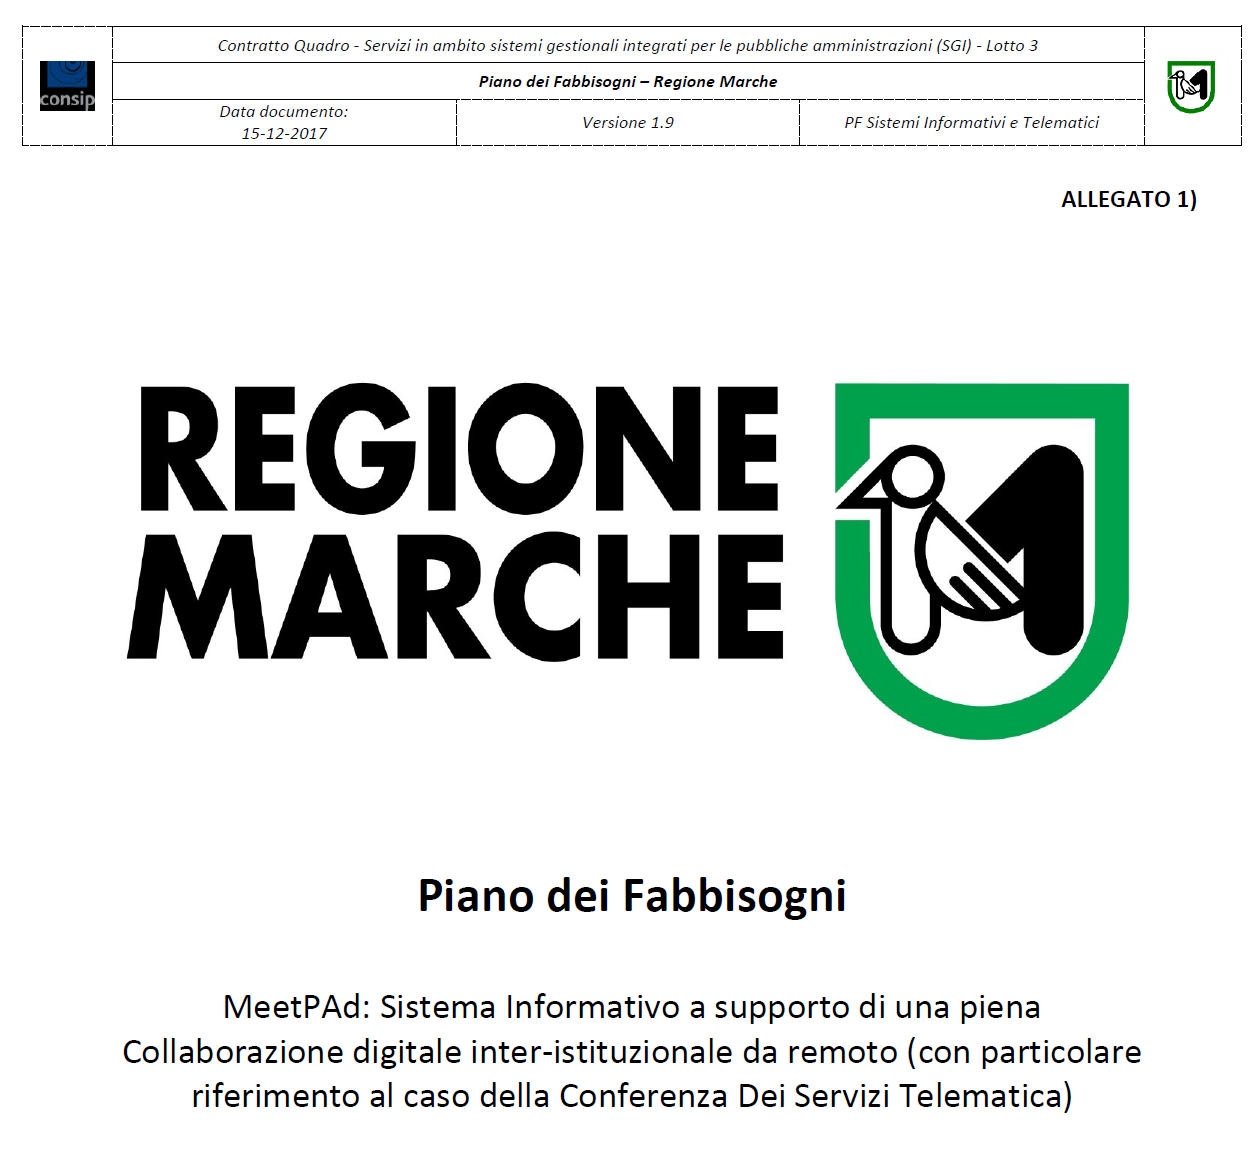 Piano dei Fabbisogni MeetPAd redatto da Regione Marche